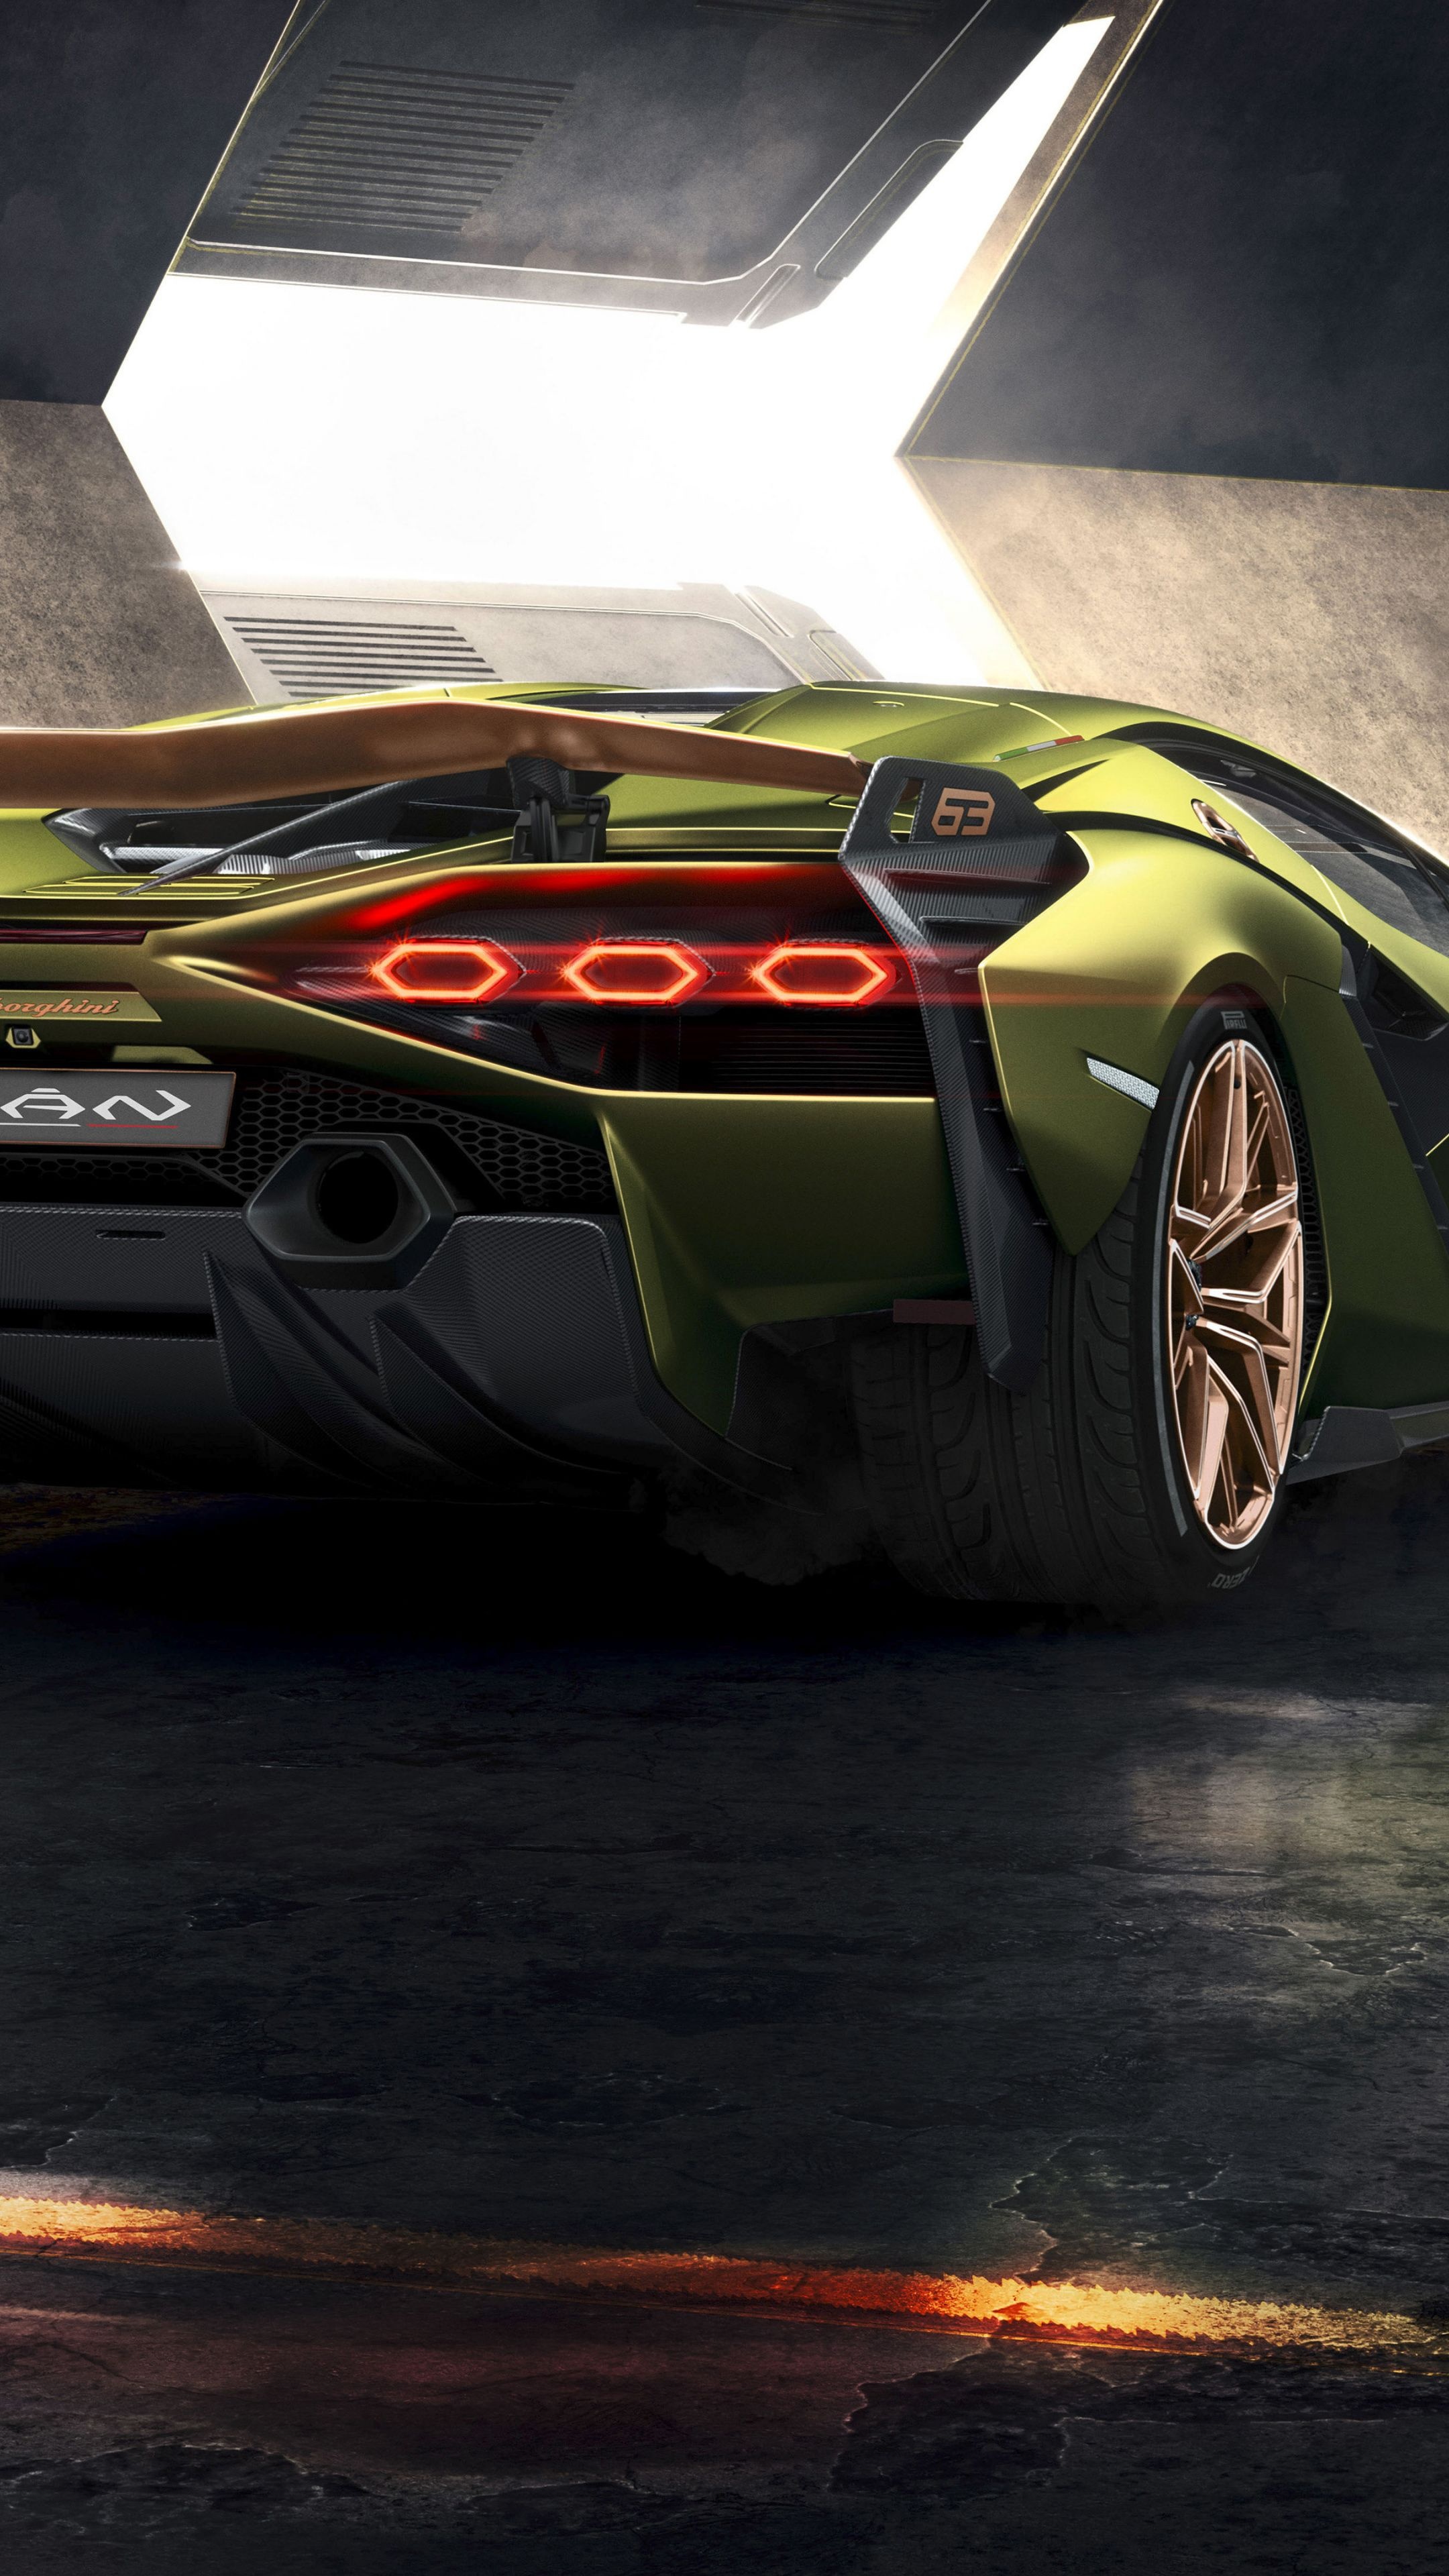 Lamborghini Sian, Red taillight, Elegant rear view, Expensive sports cars, 2160x3840 4K Phone